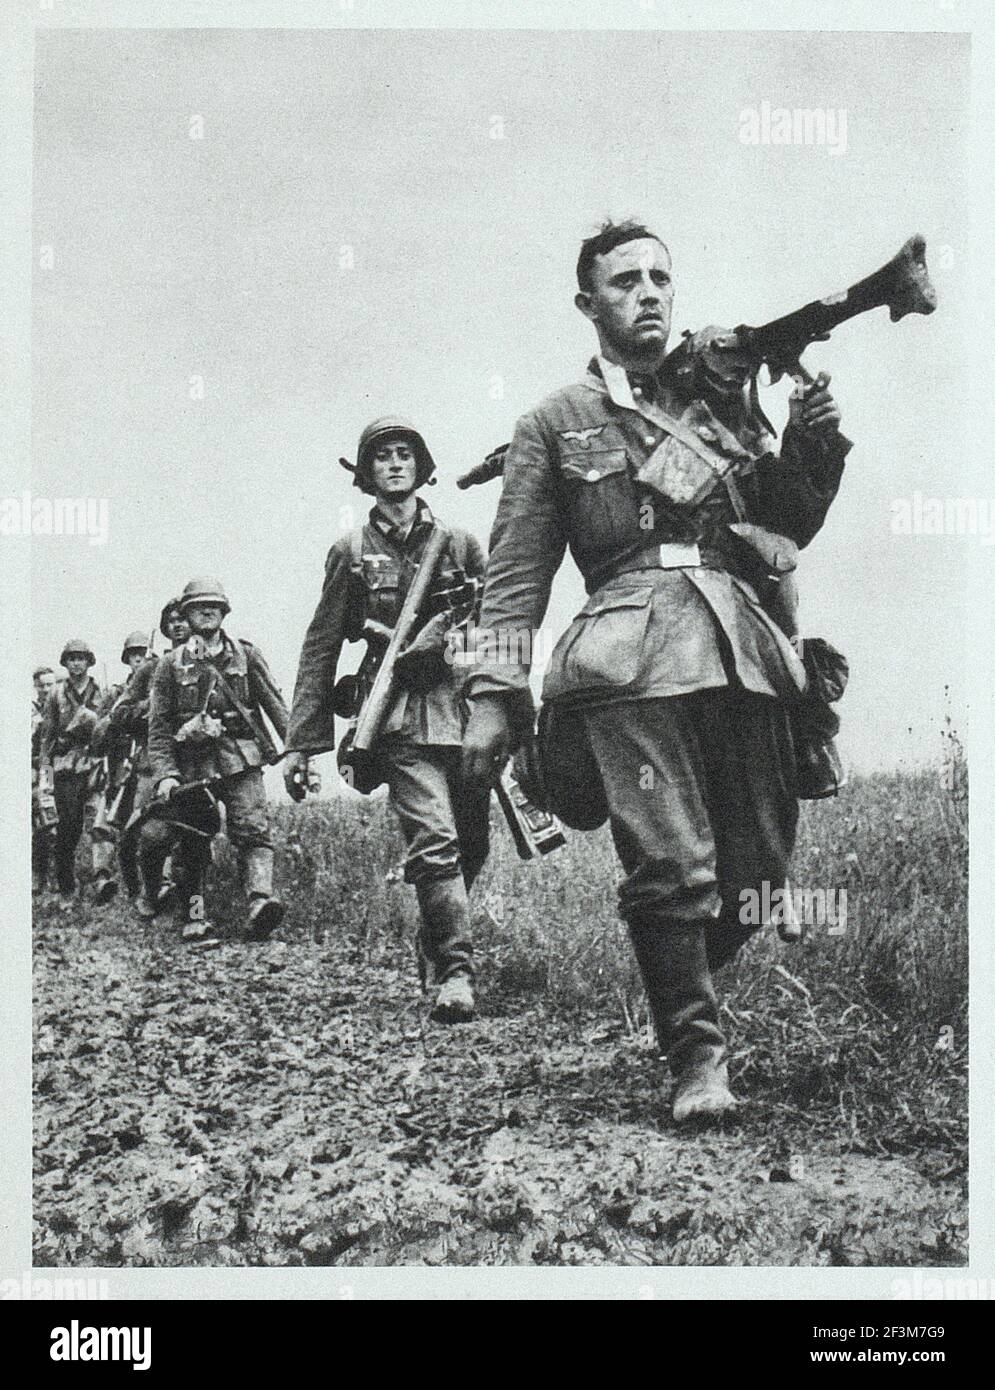 La période de la Seconde Guerre mondiale de la propagande allemande. Bataille de France. Soldats allemands pendant la marche de la victoire en France. 1940 Banque D'Images